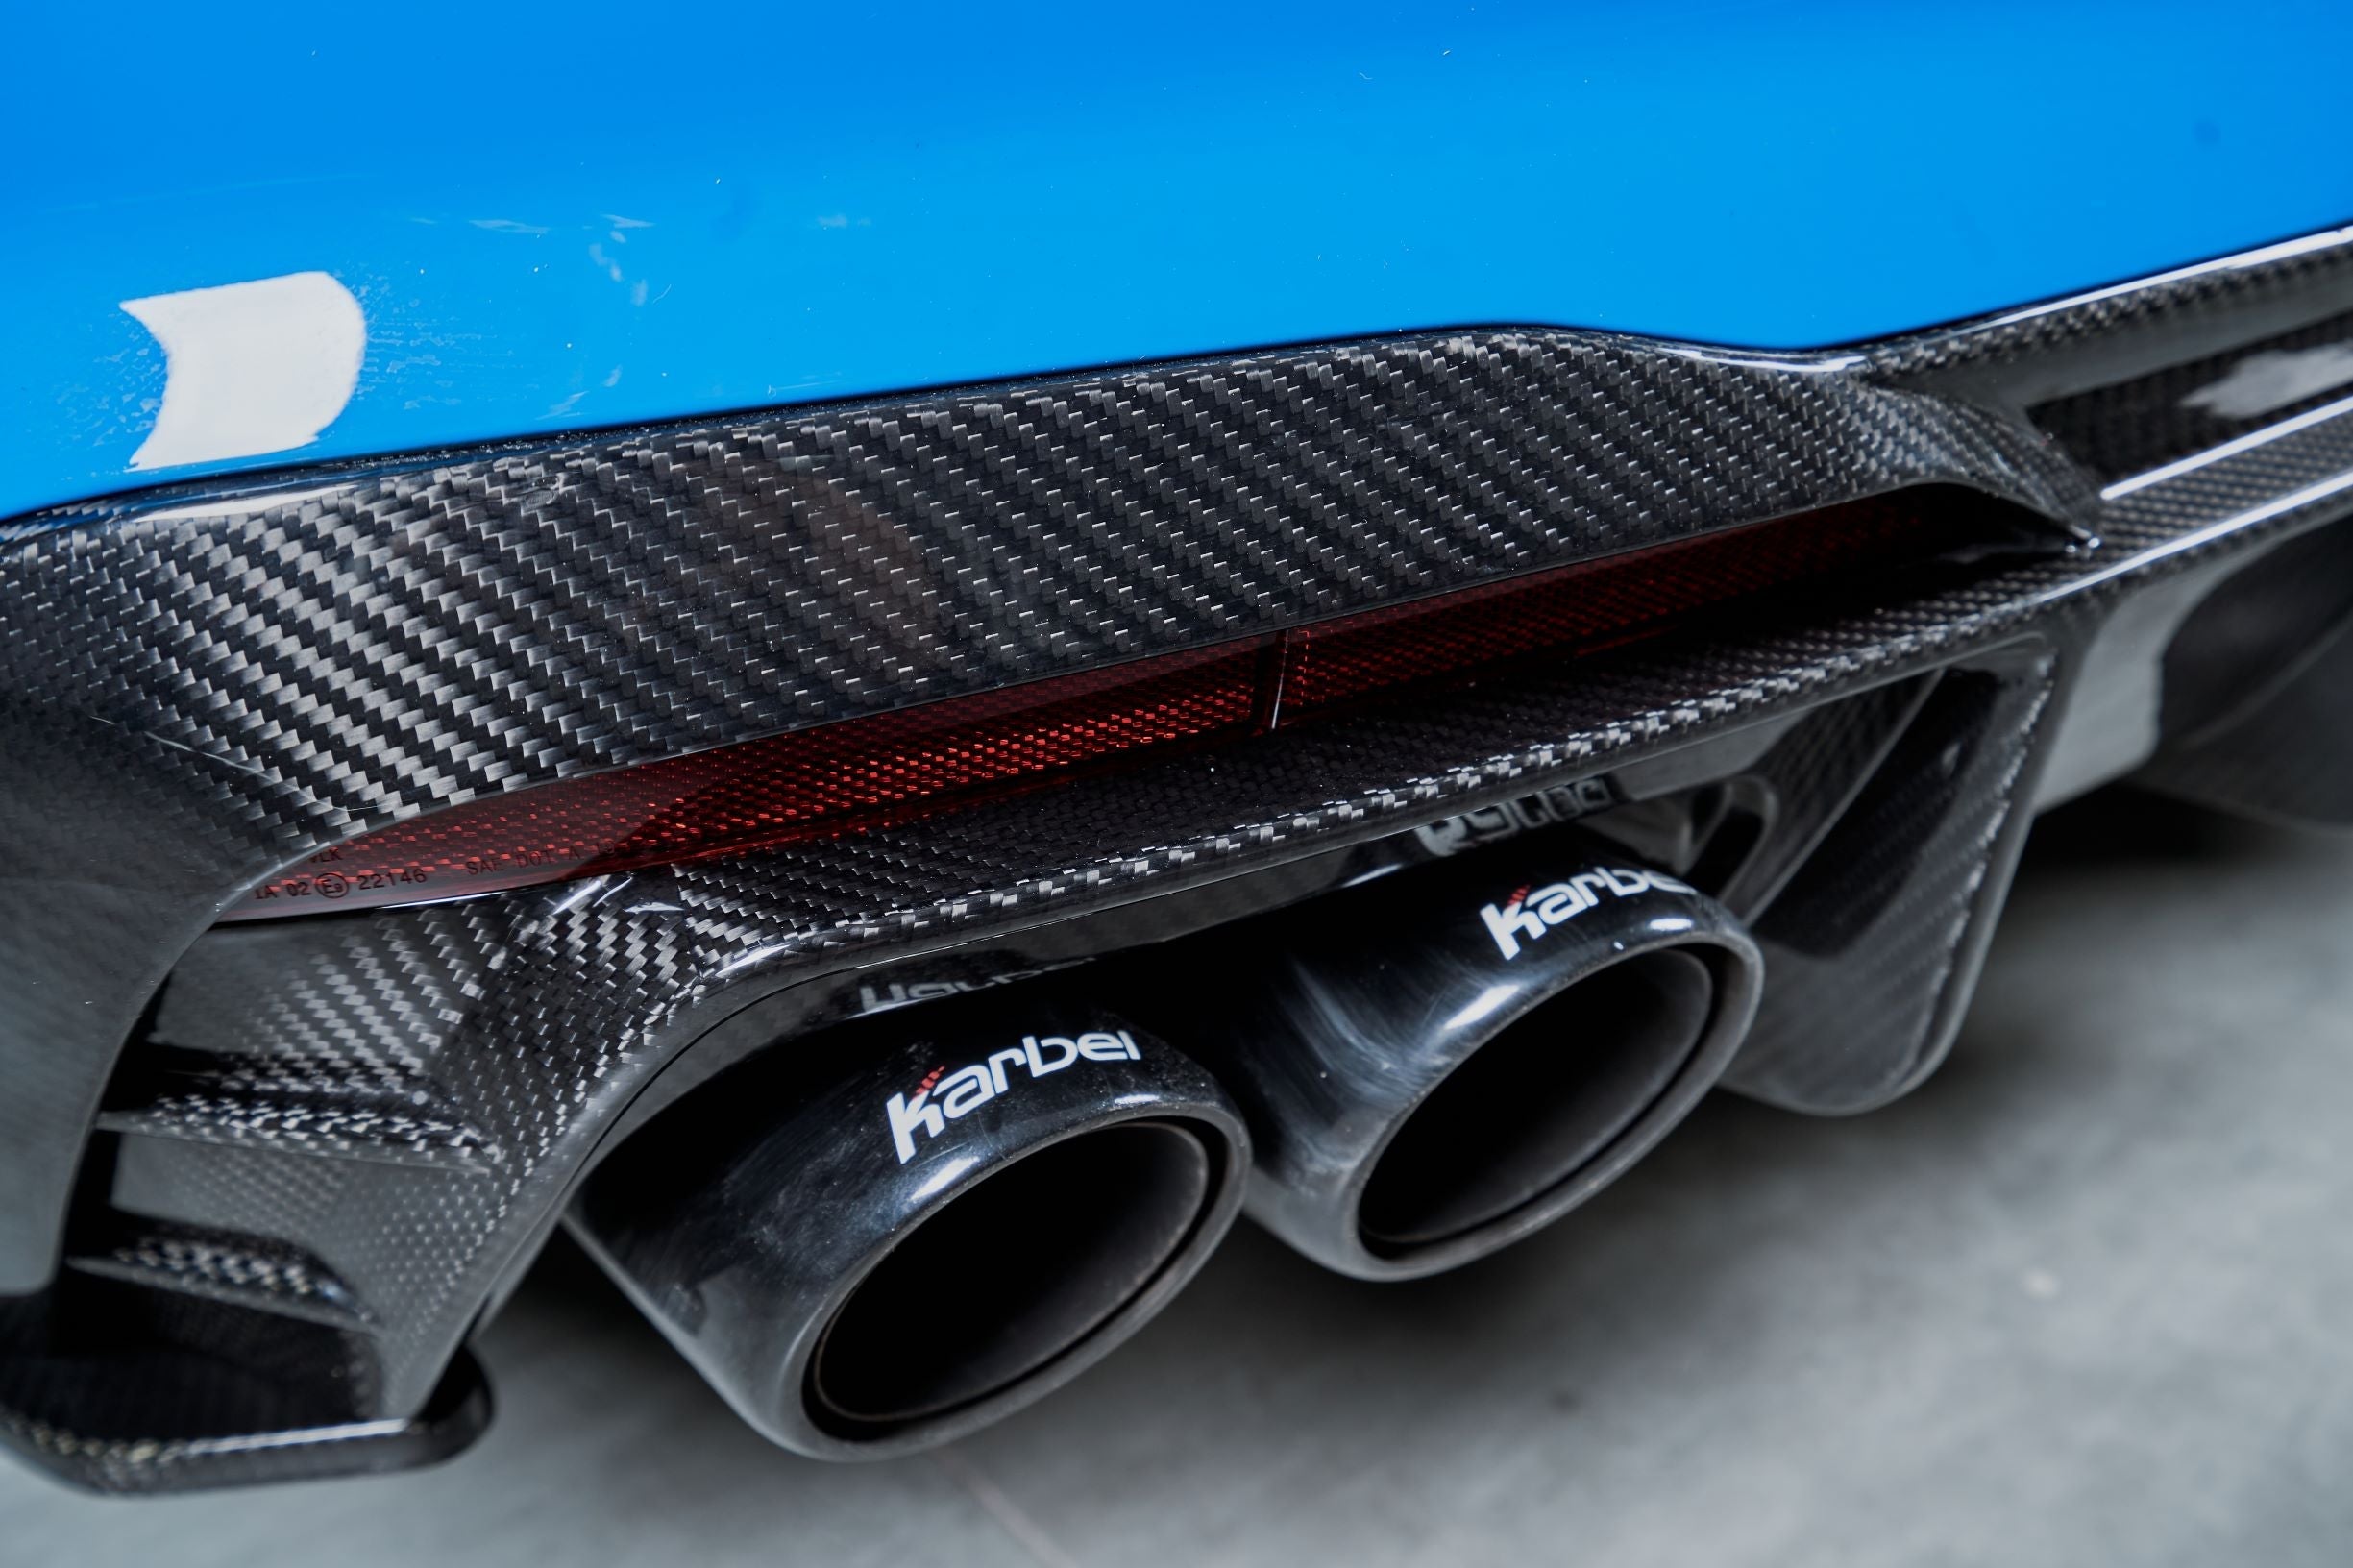 Karbel Carbon Dry Carbon Fiber Rear Diffuser Ver.1 with Brake Light for Audi S4 2020-ON B9.5